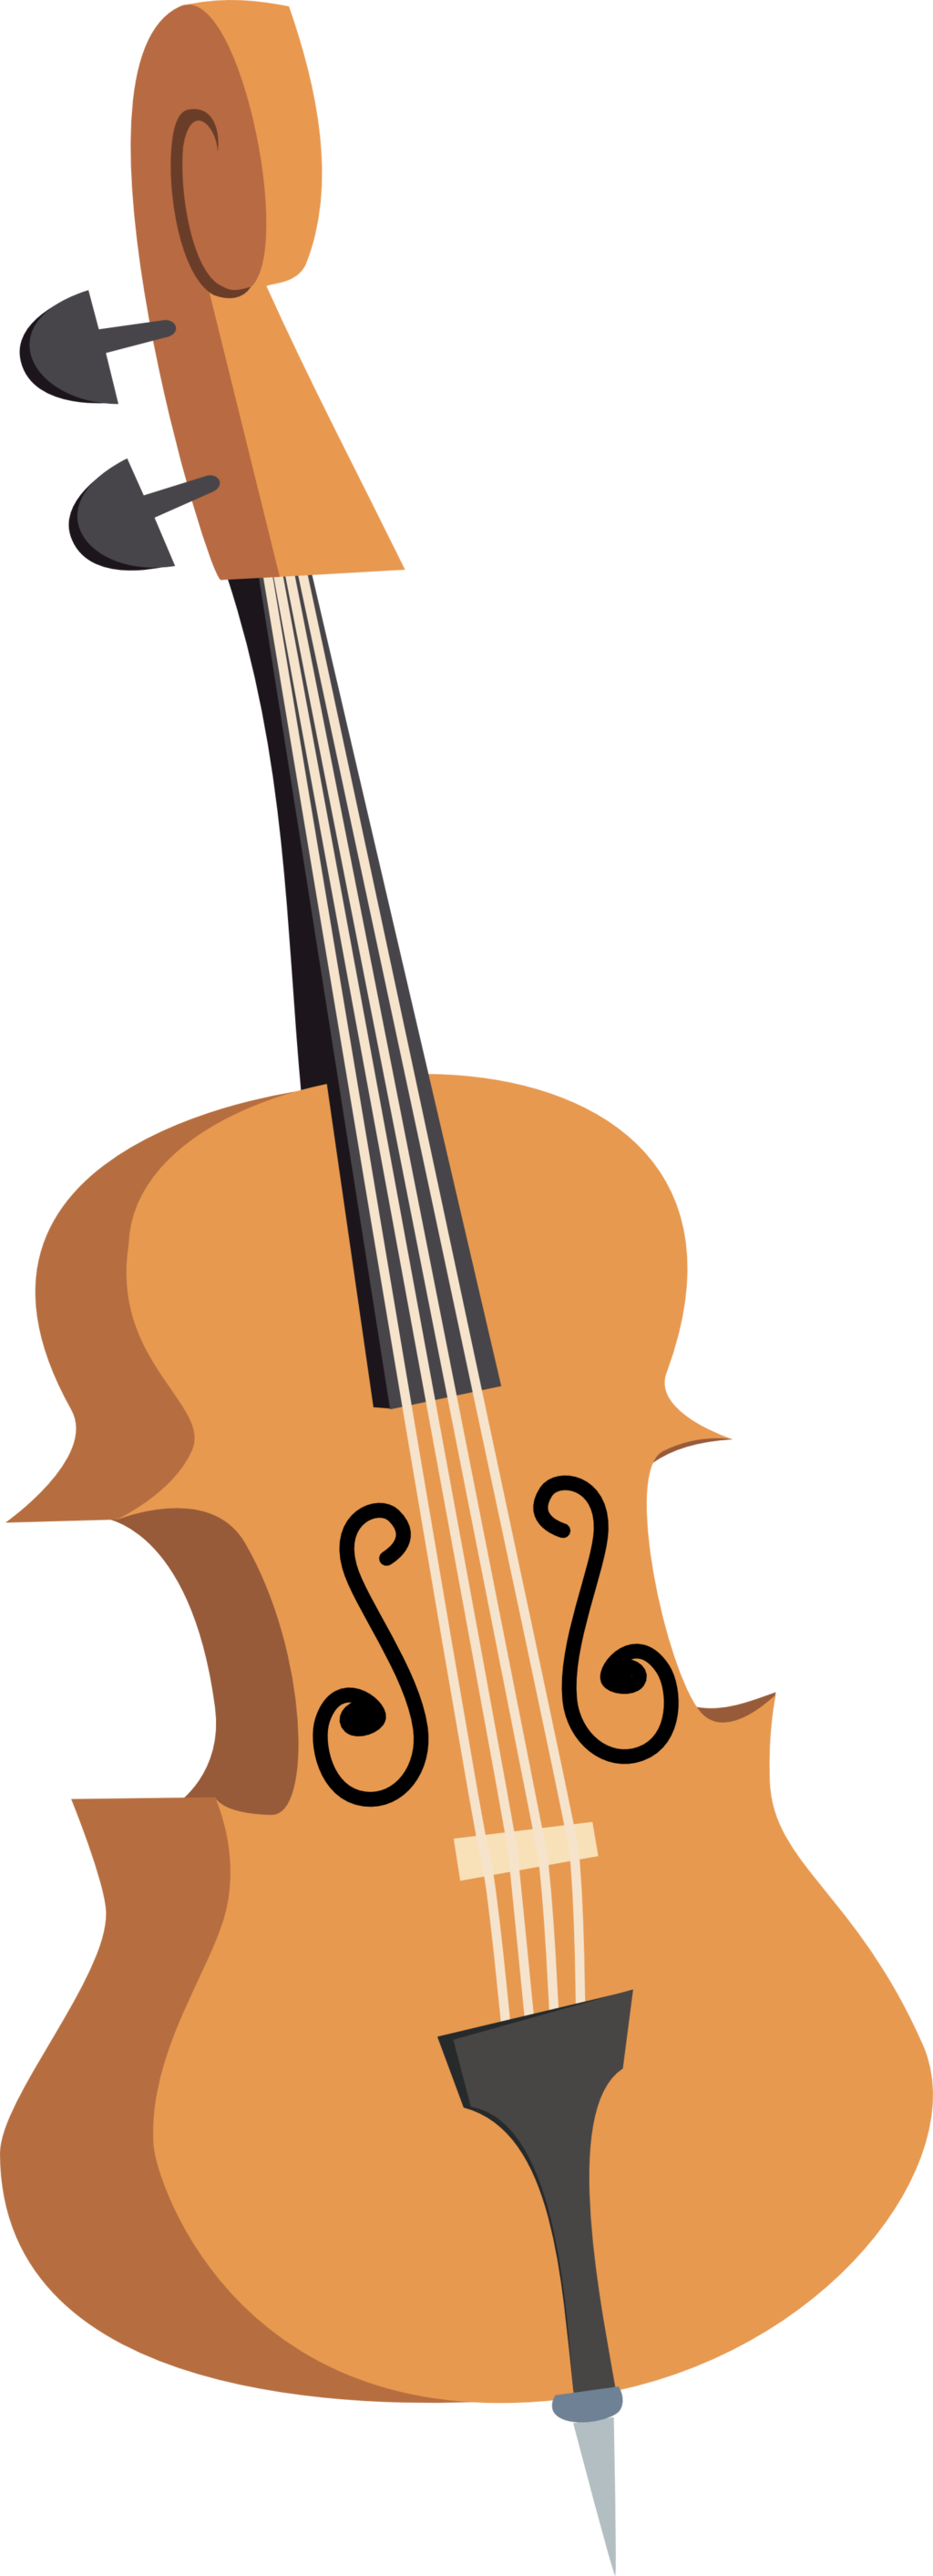 Cello PNG Gambar berkualitas tinggi